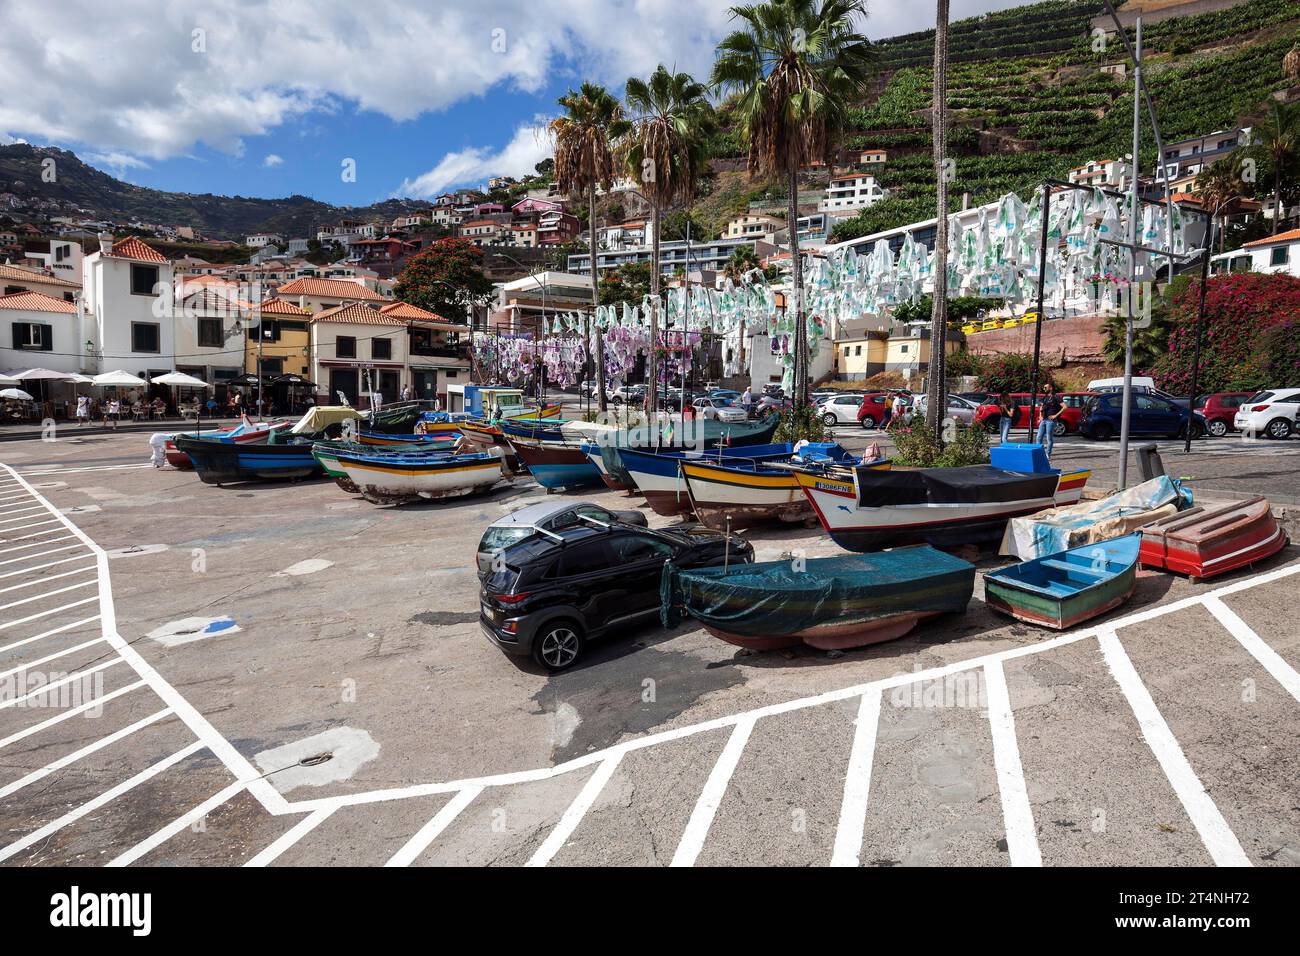 Port avec des bateaux de pêche colorés, Camara de Lobos, île de Madère, Portugal, Europe Banque D'Images